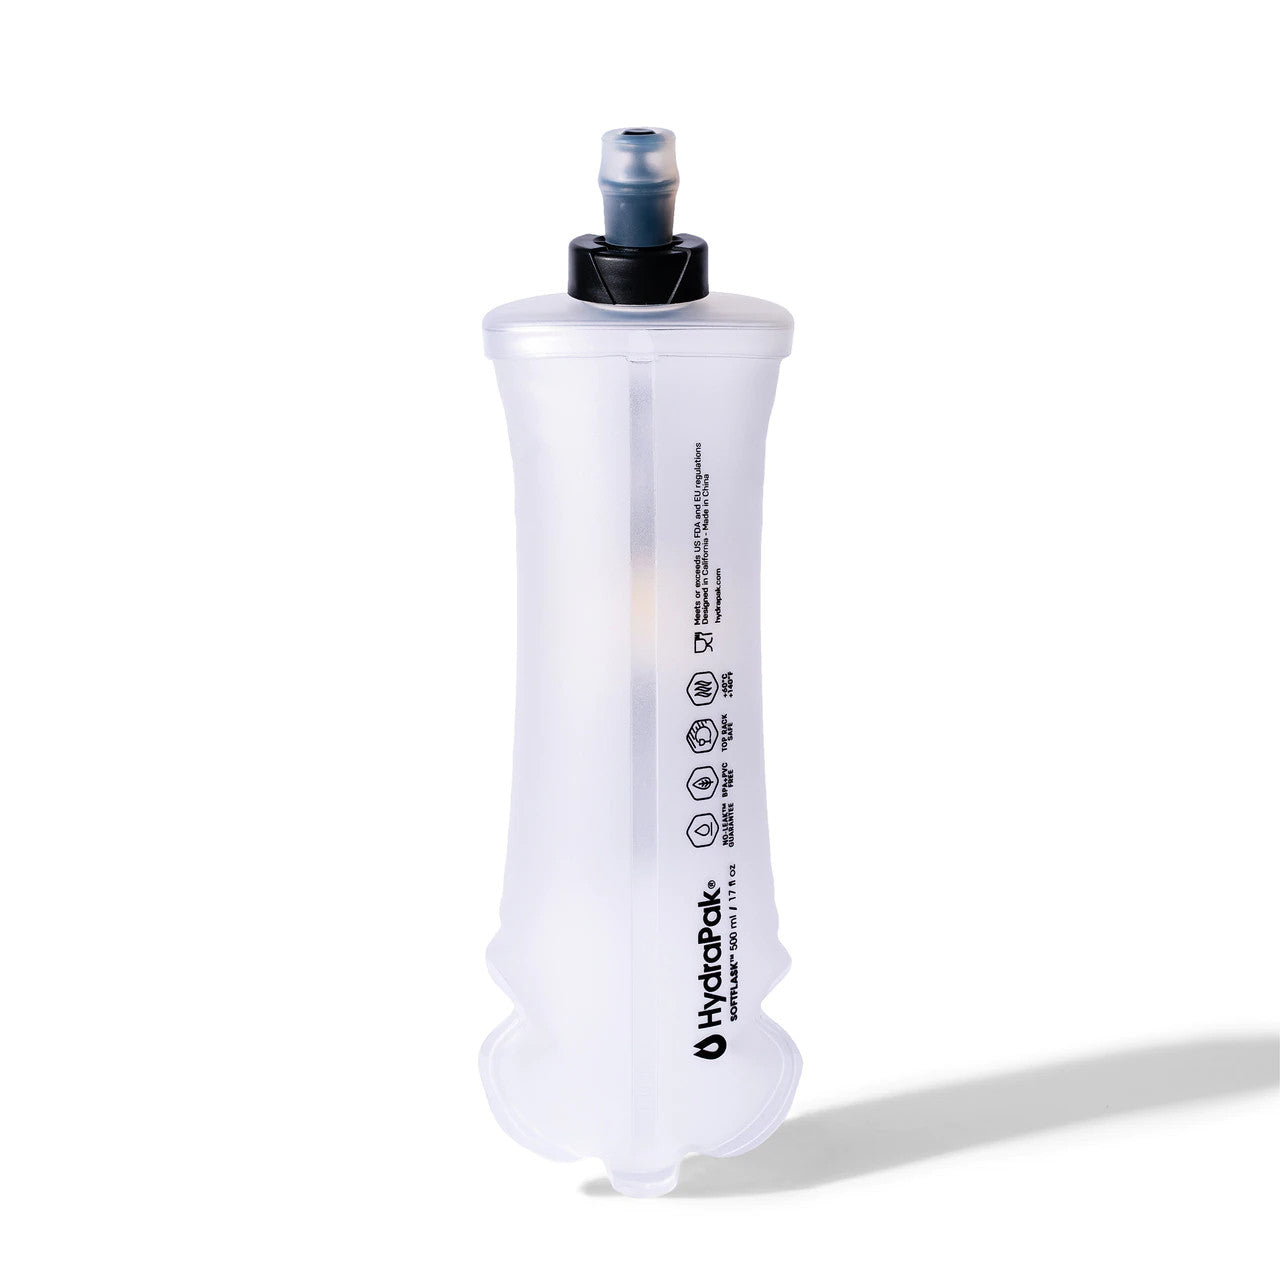 Ultraflask 500ml soft flask 17 oz for running vest packs – Orange